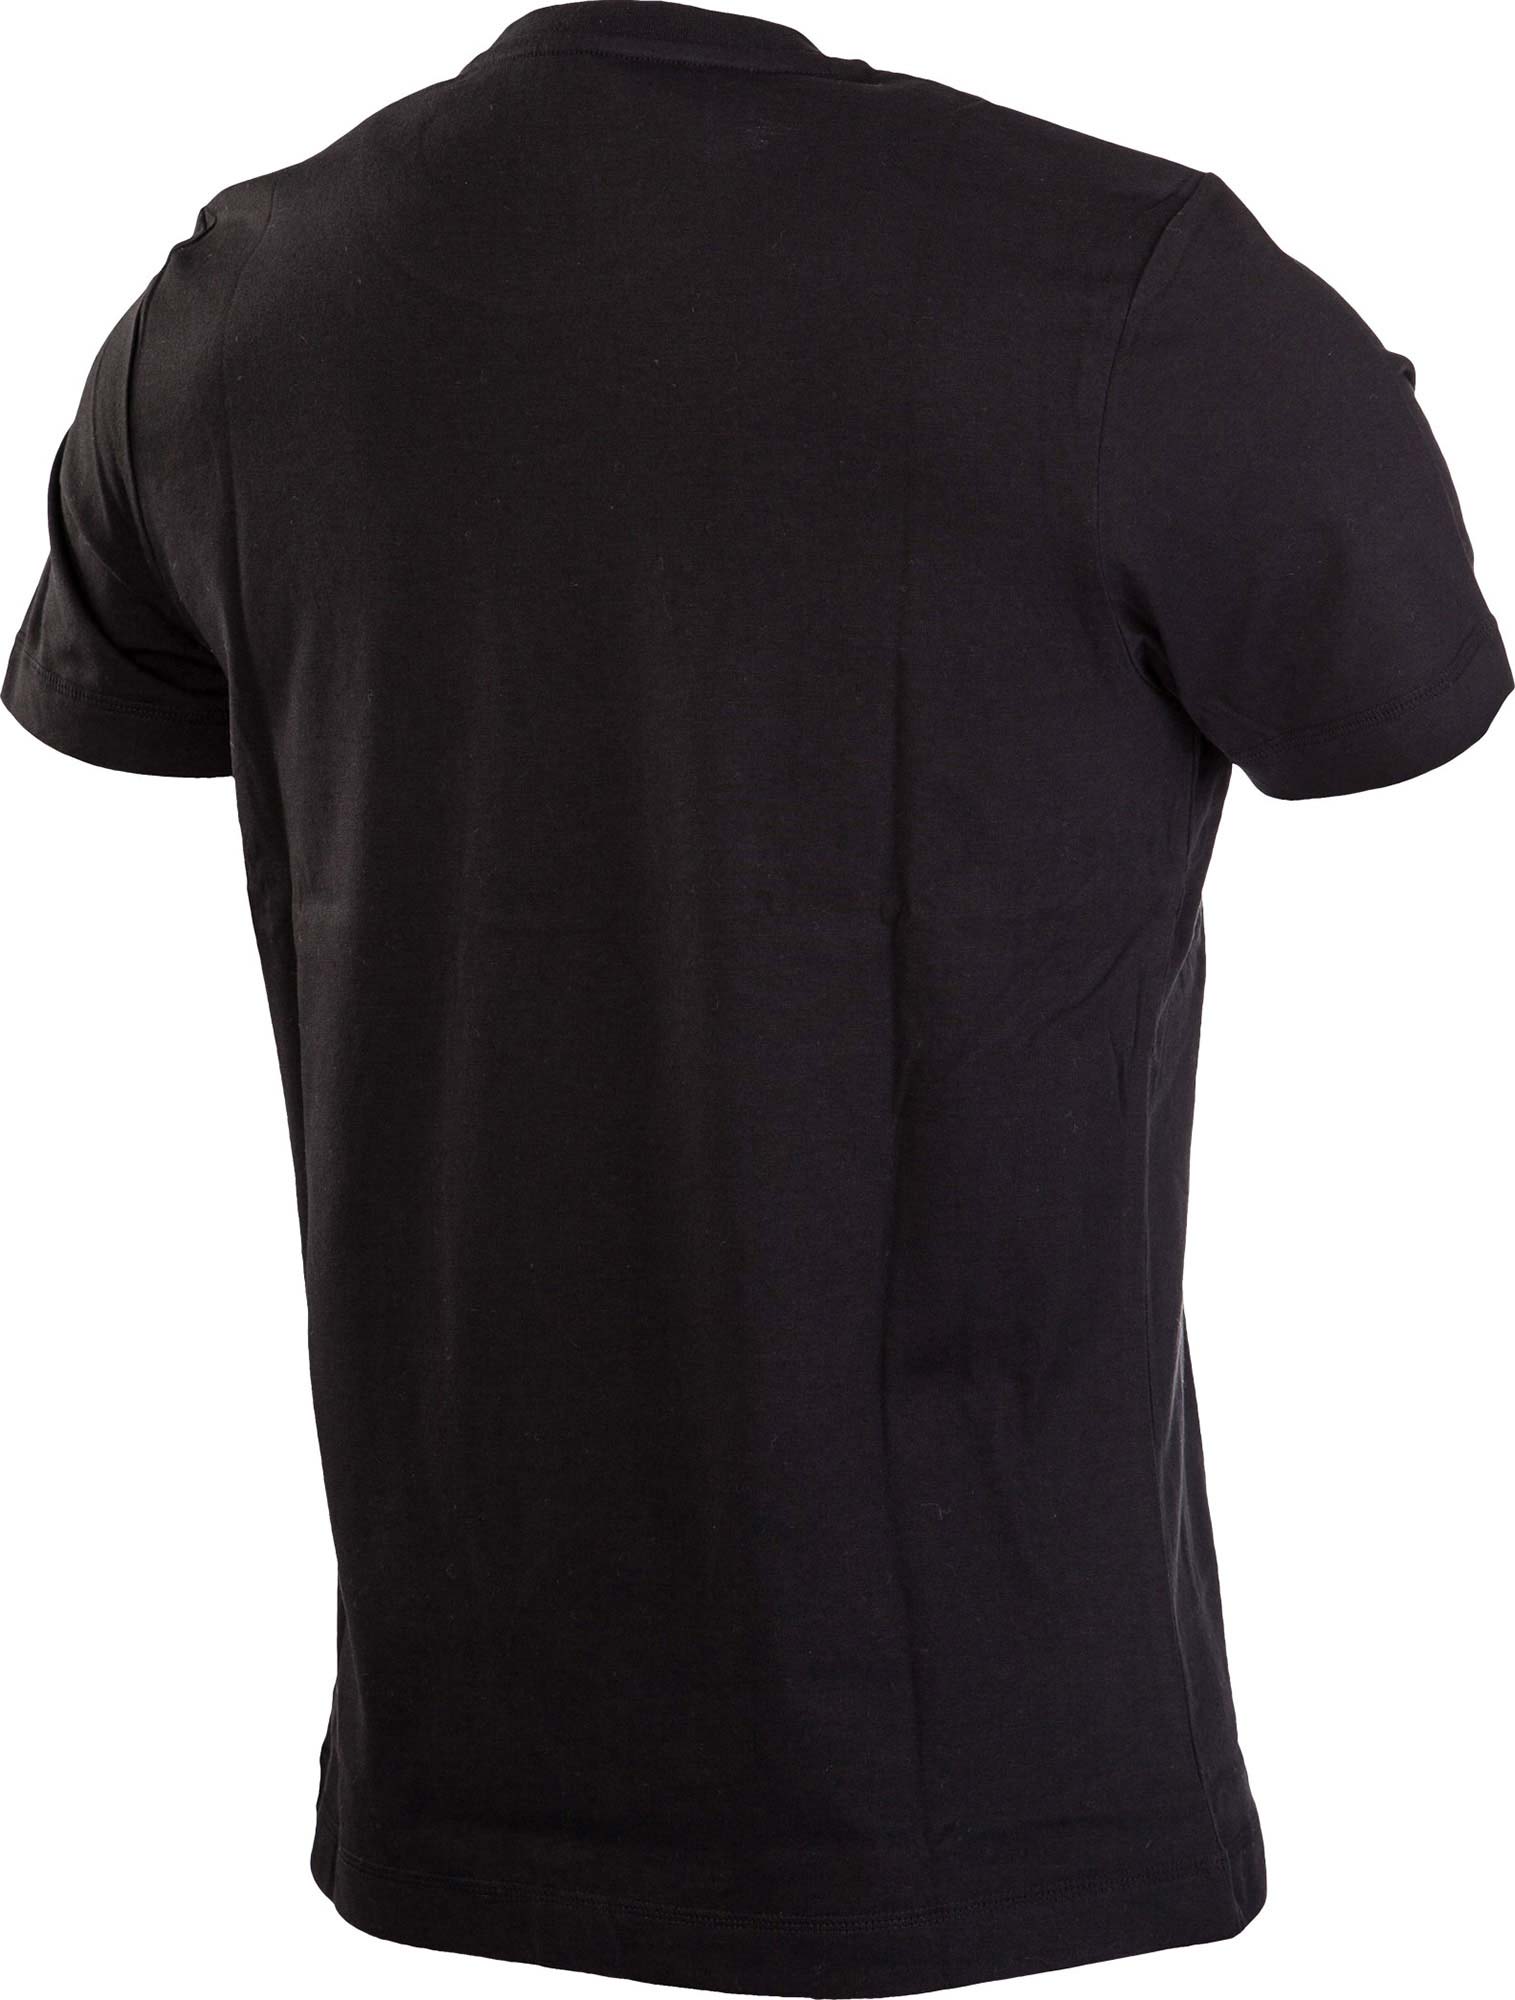 AARON LEISURE ATHLETIC MAN - Pánské sportovní tričko